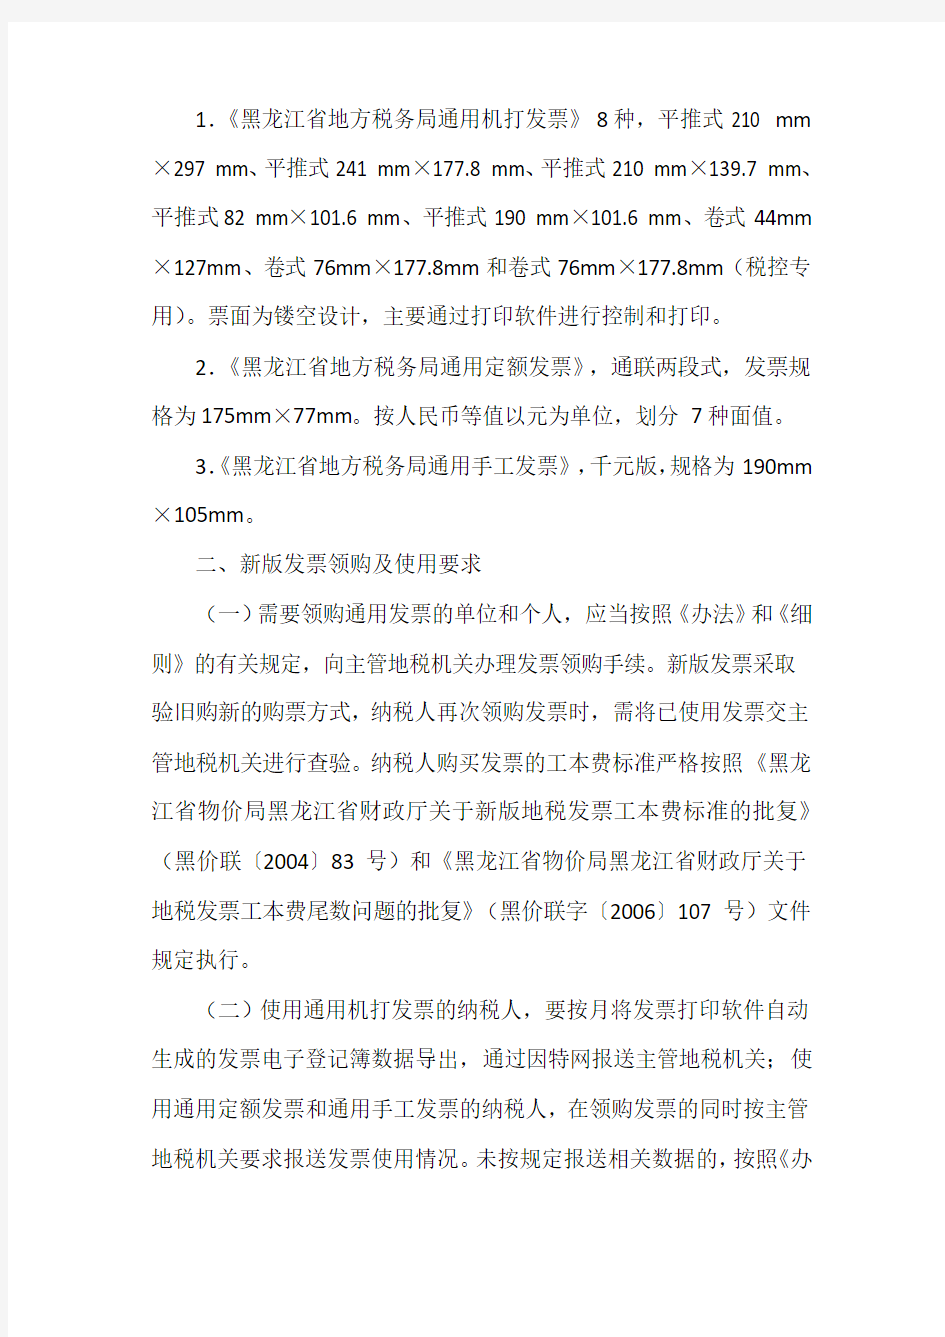 黑龙江省地方税务局关于全省地税普通发票简并票种统一式样问题的公告(1)